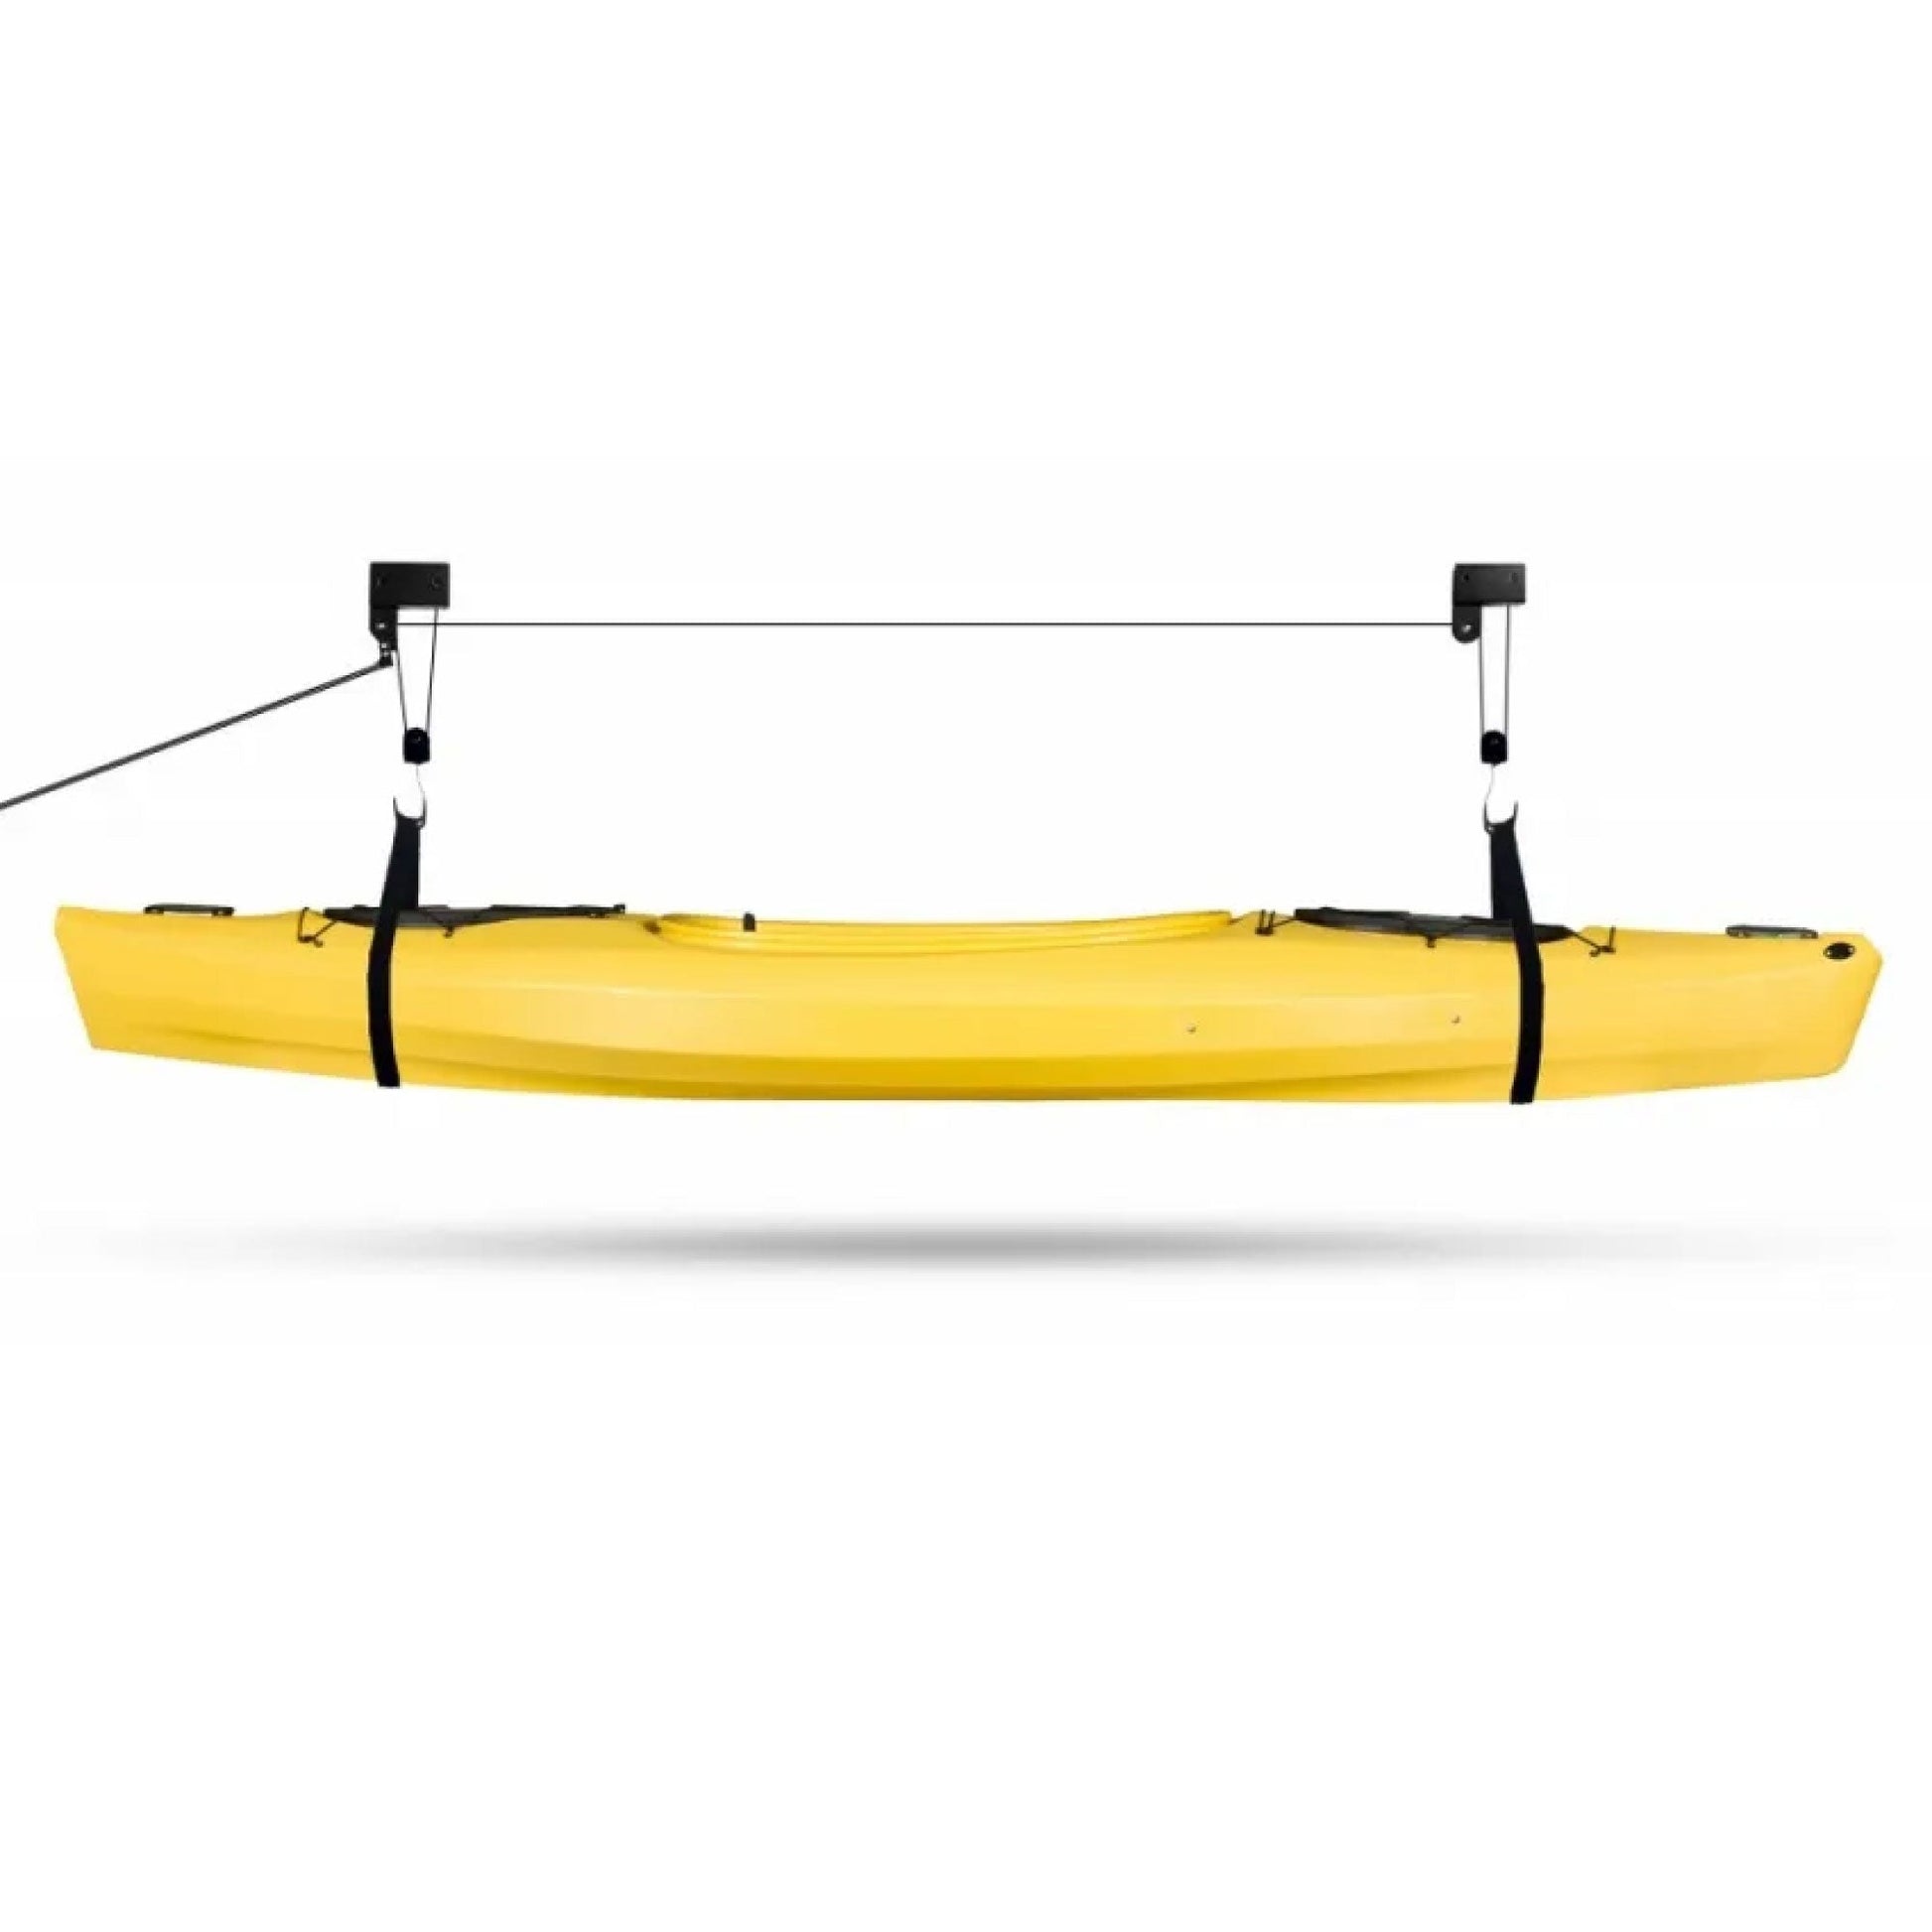 Kayak Hoist - 45kg Garage Ceiling Pulley Lift Storage System Bike Luggage Holder